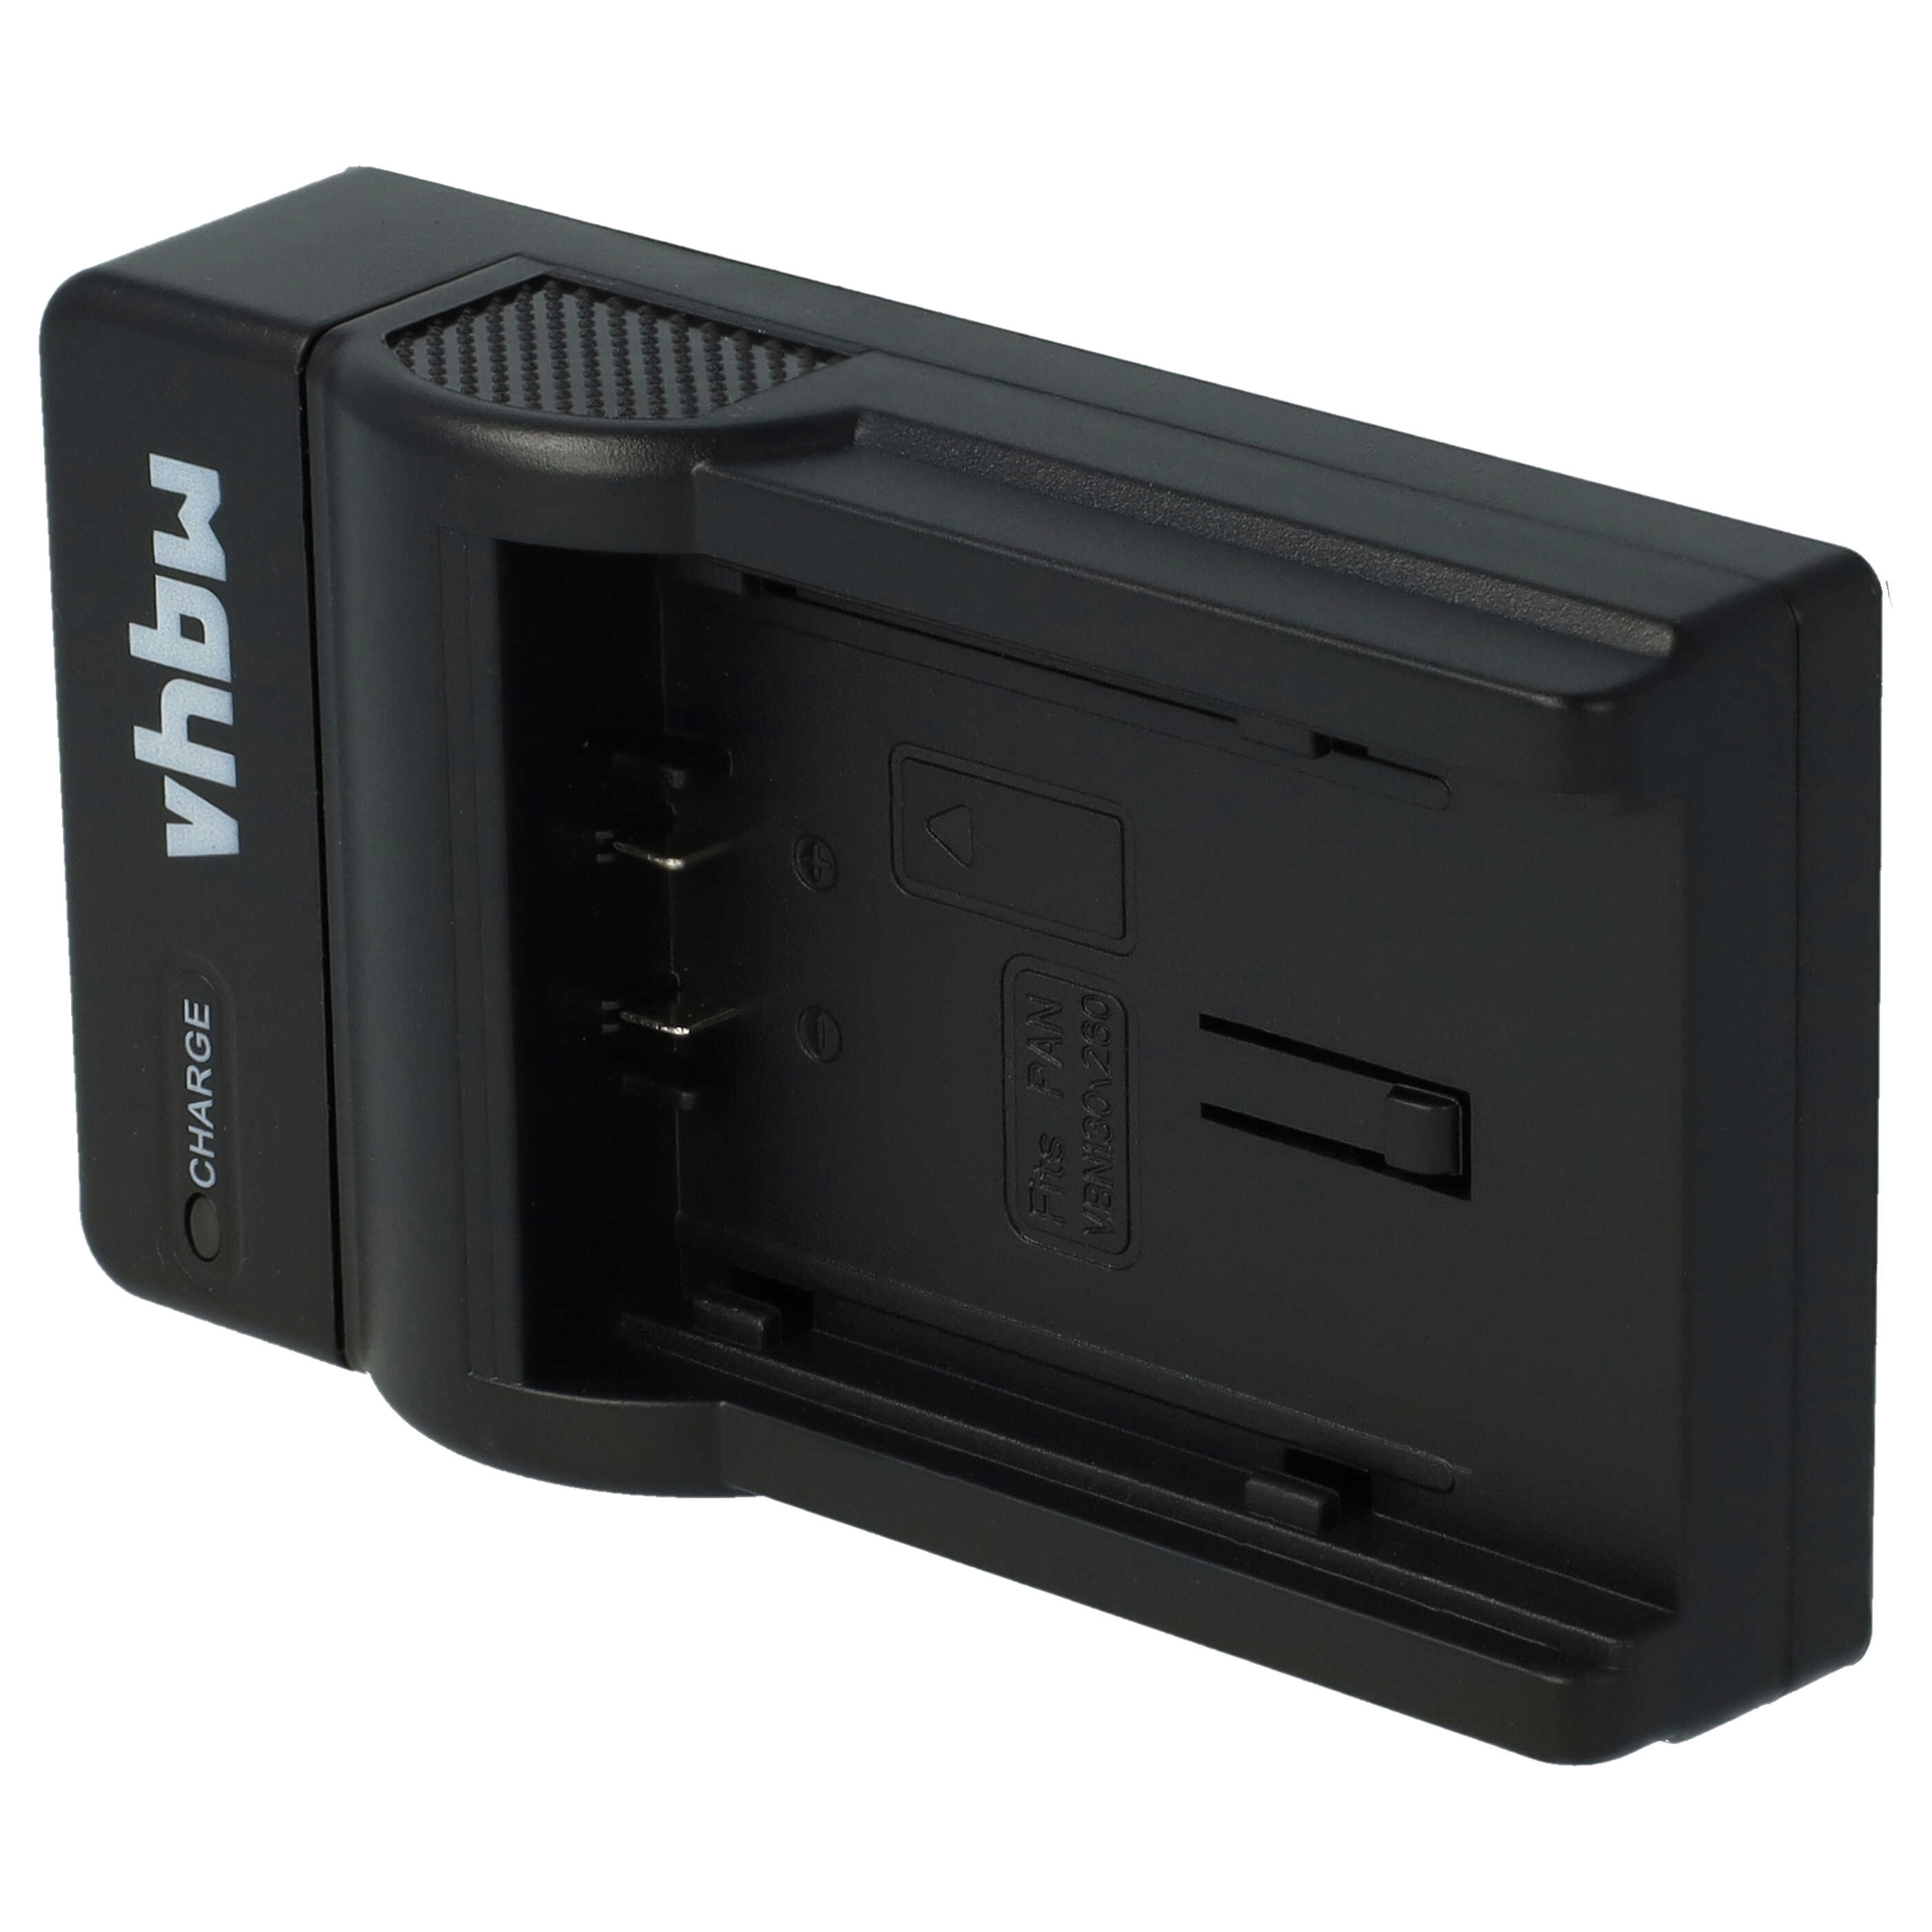 Akku Ladegerät passend für HDC-SD1 Kamera u.a. - 0,5 A, 8,4 V